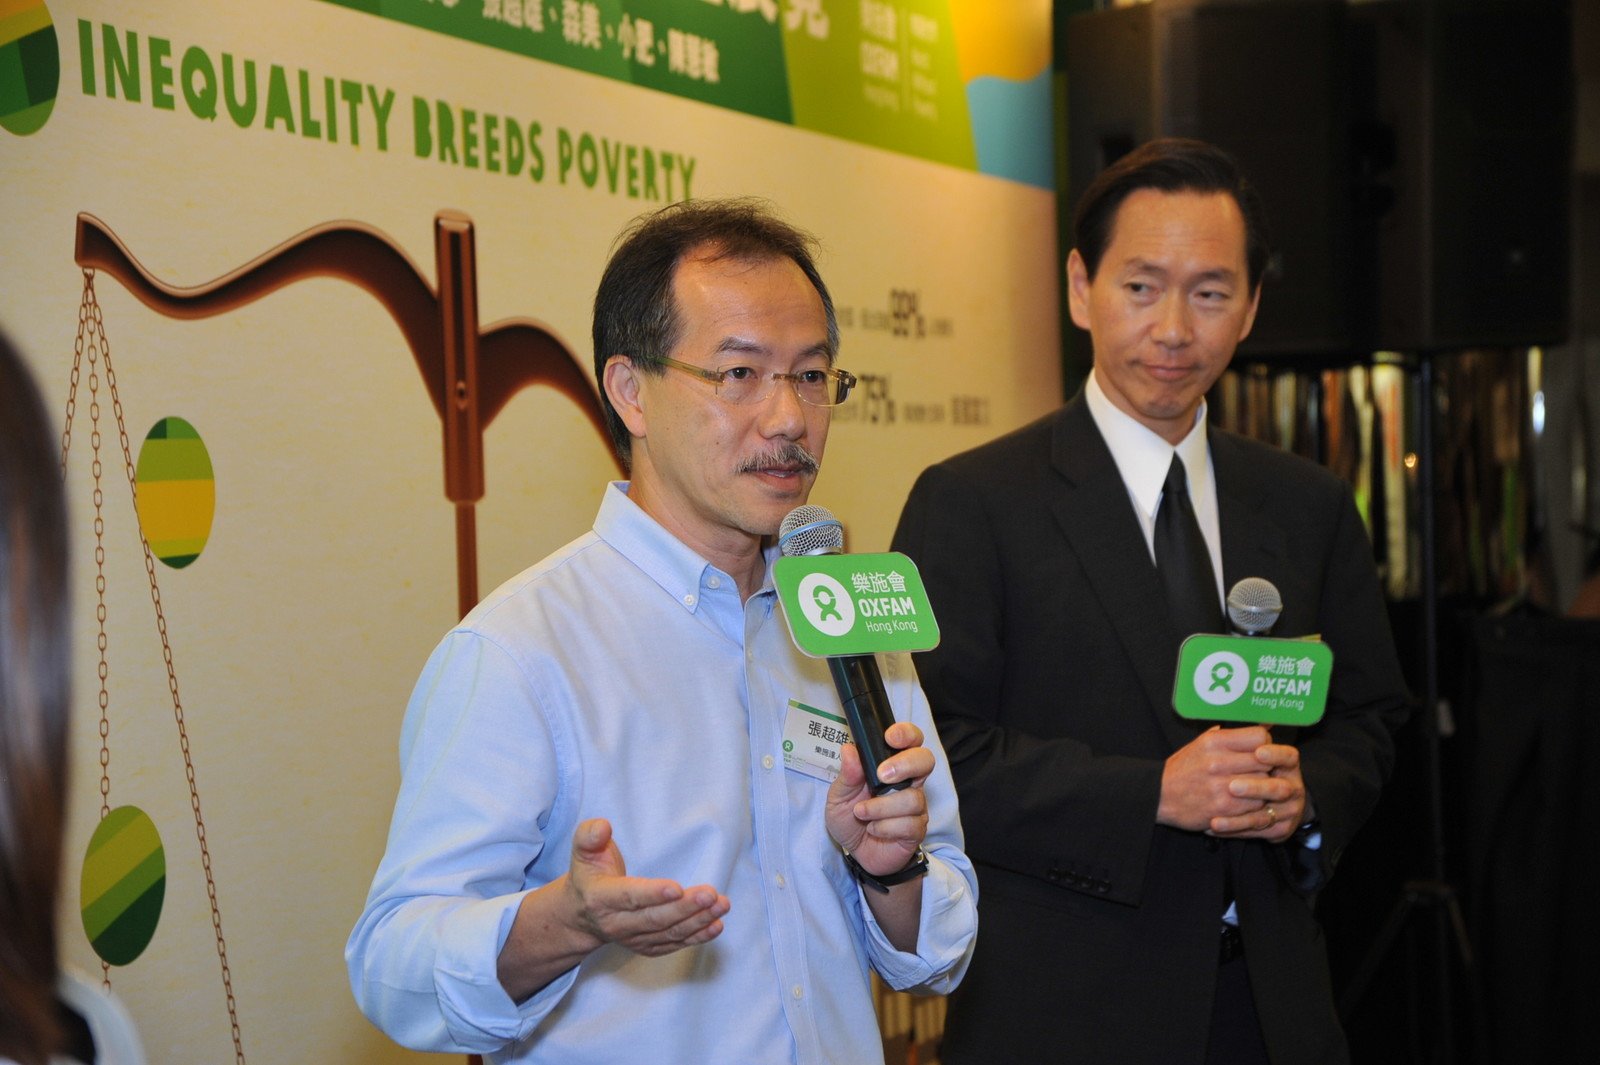 立法会议员张超雄（左）与乐施会董事会成员兼行政会议成员陈智思（右）对谈，分享他们对「贫穷源于不公平」的看法。